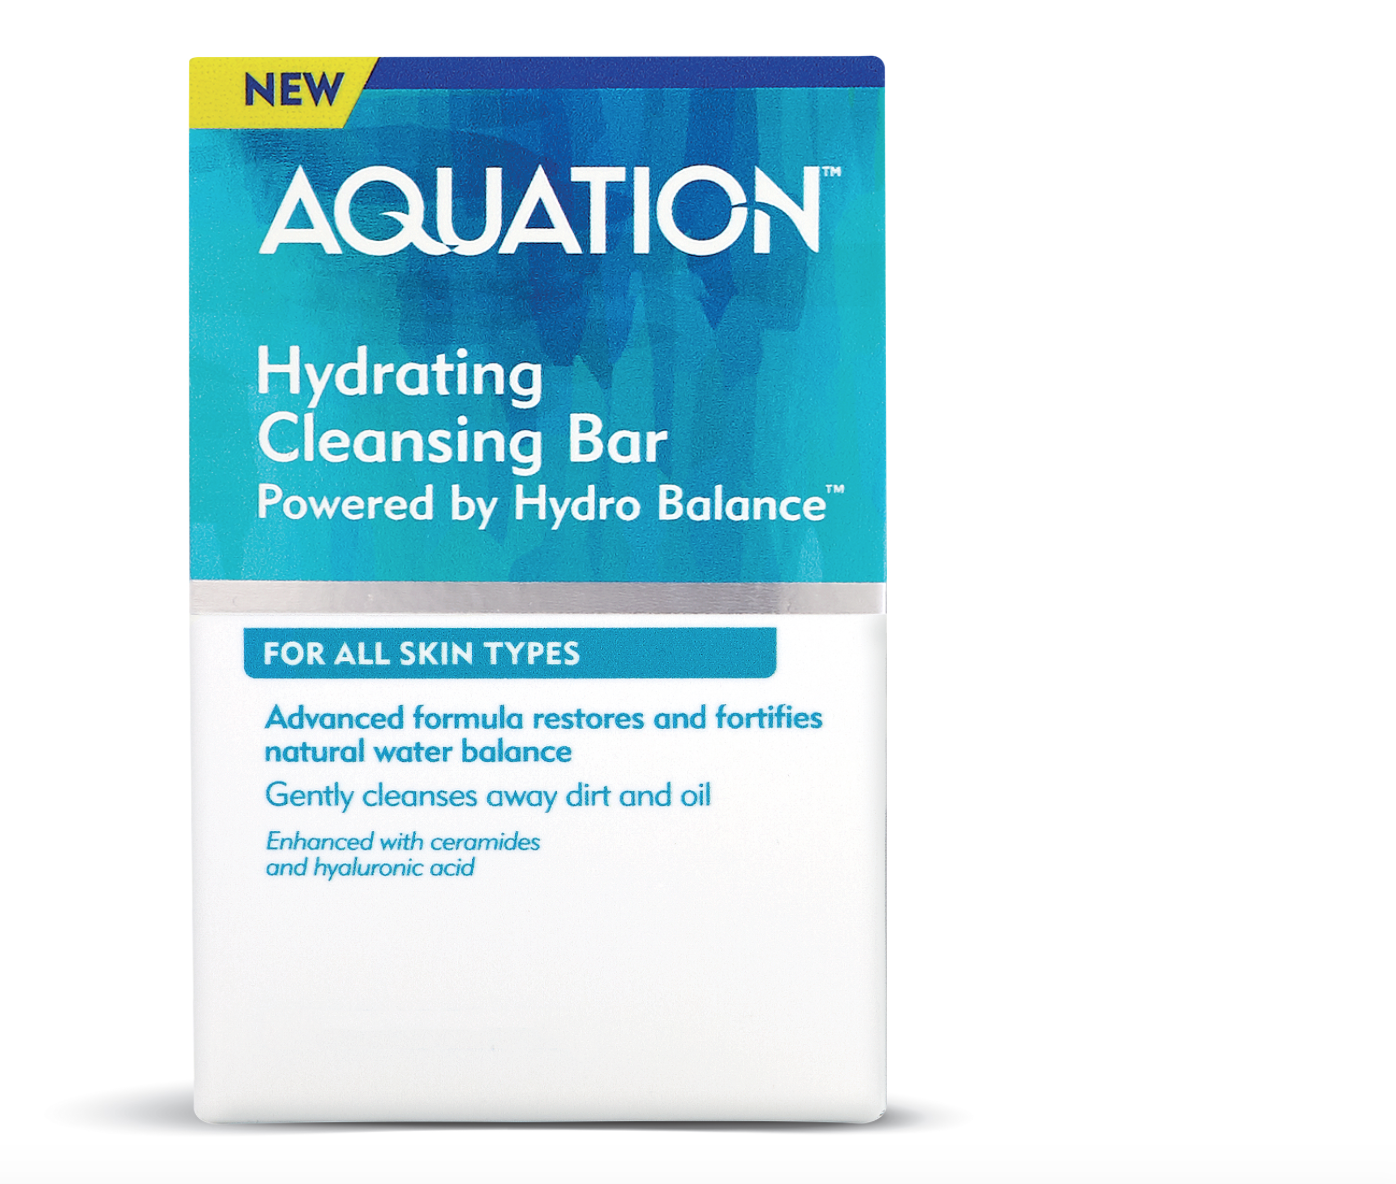 Aquation Hydrating Cleansing Bar